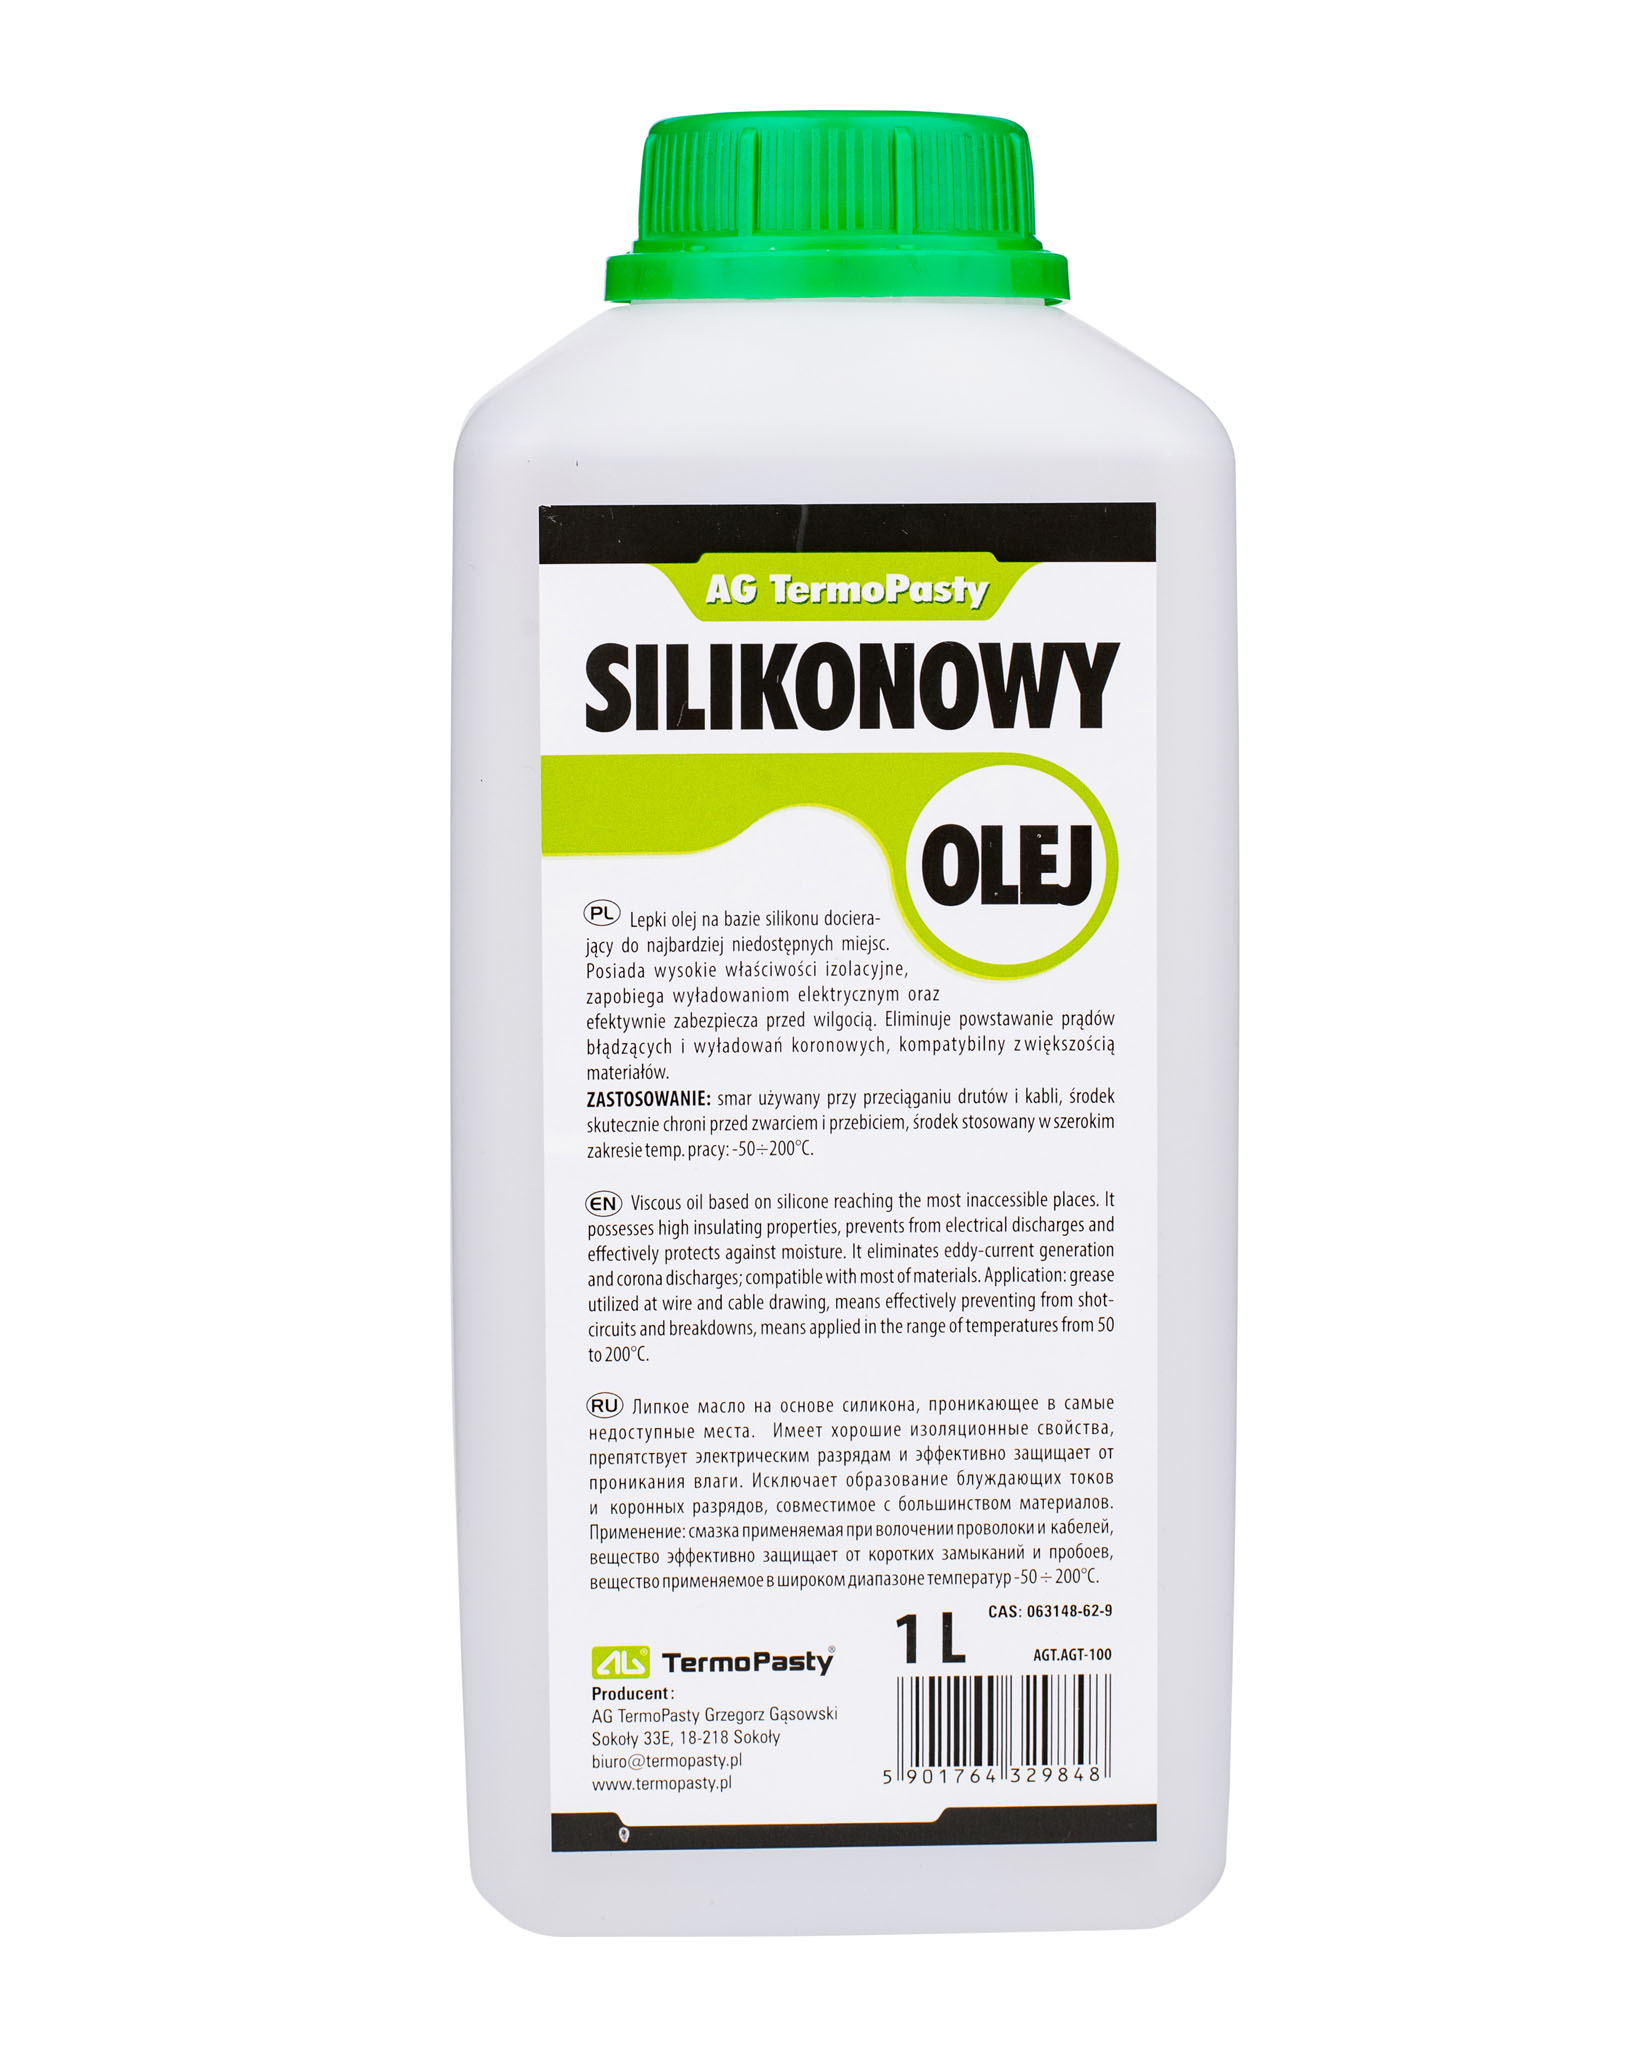 Butelka oleju silikonowego 1 L do większych zastosowań.